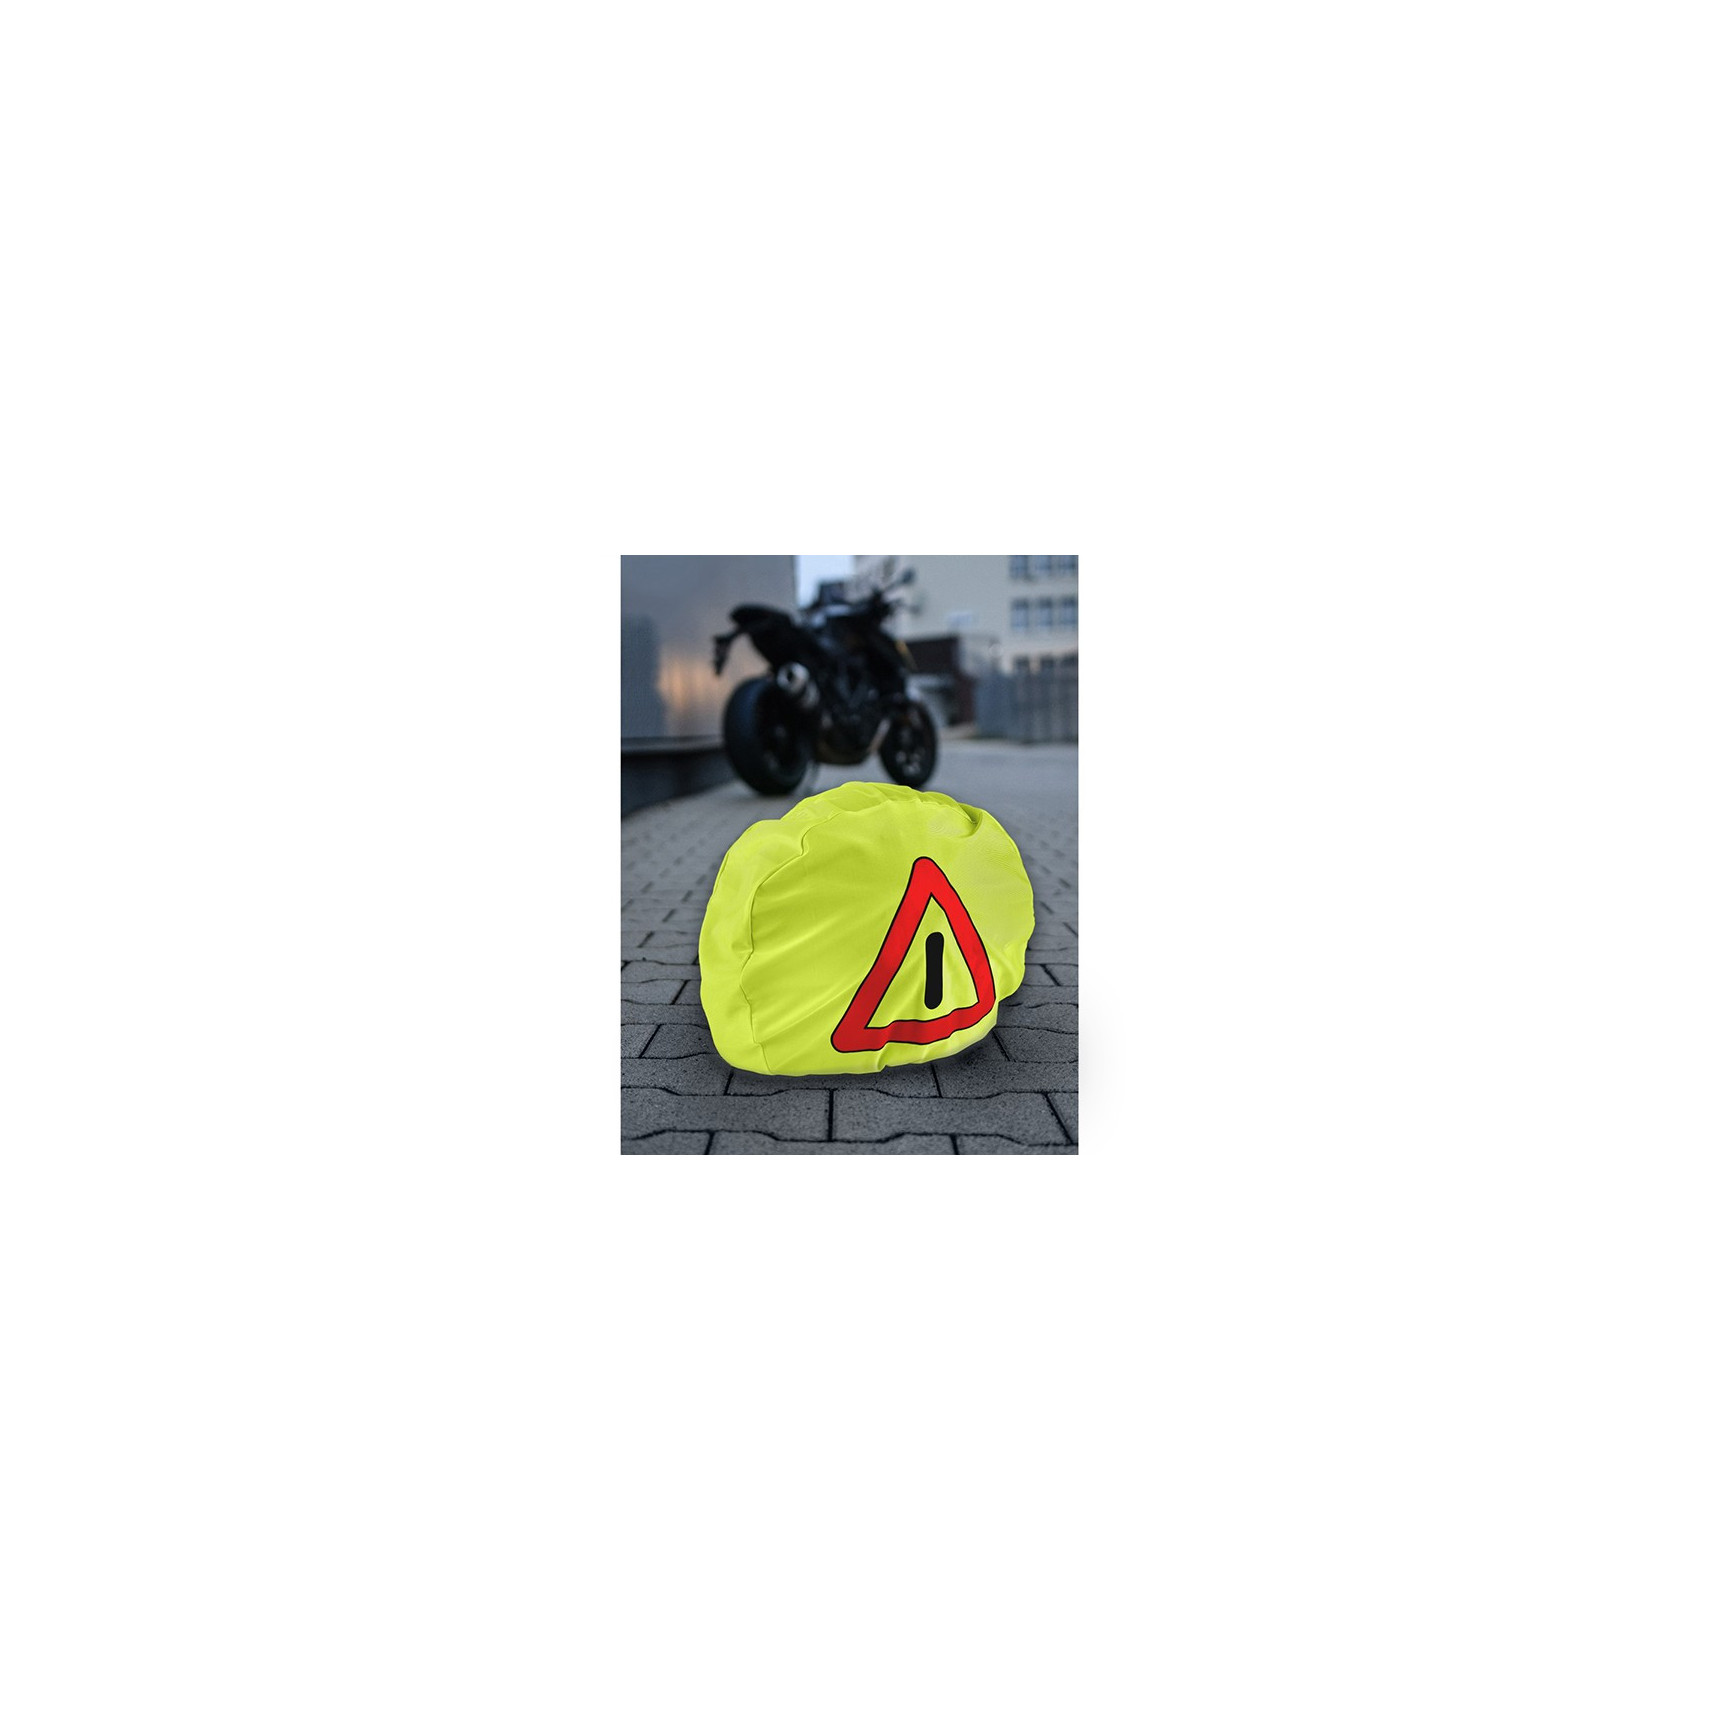 Housse de casque pour moto avec triangle de pré-signalisation